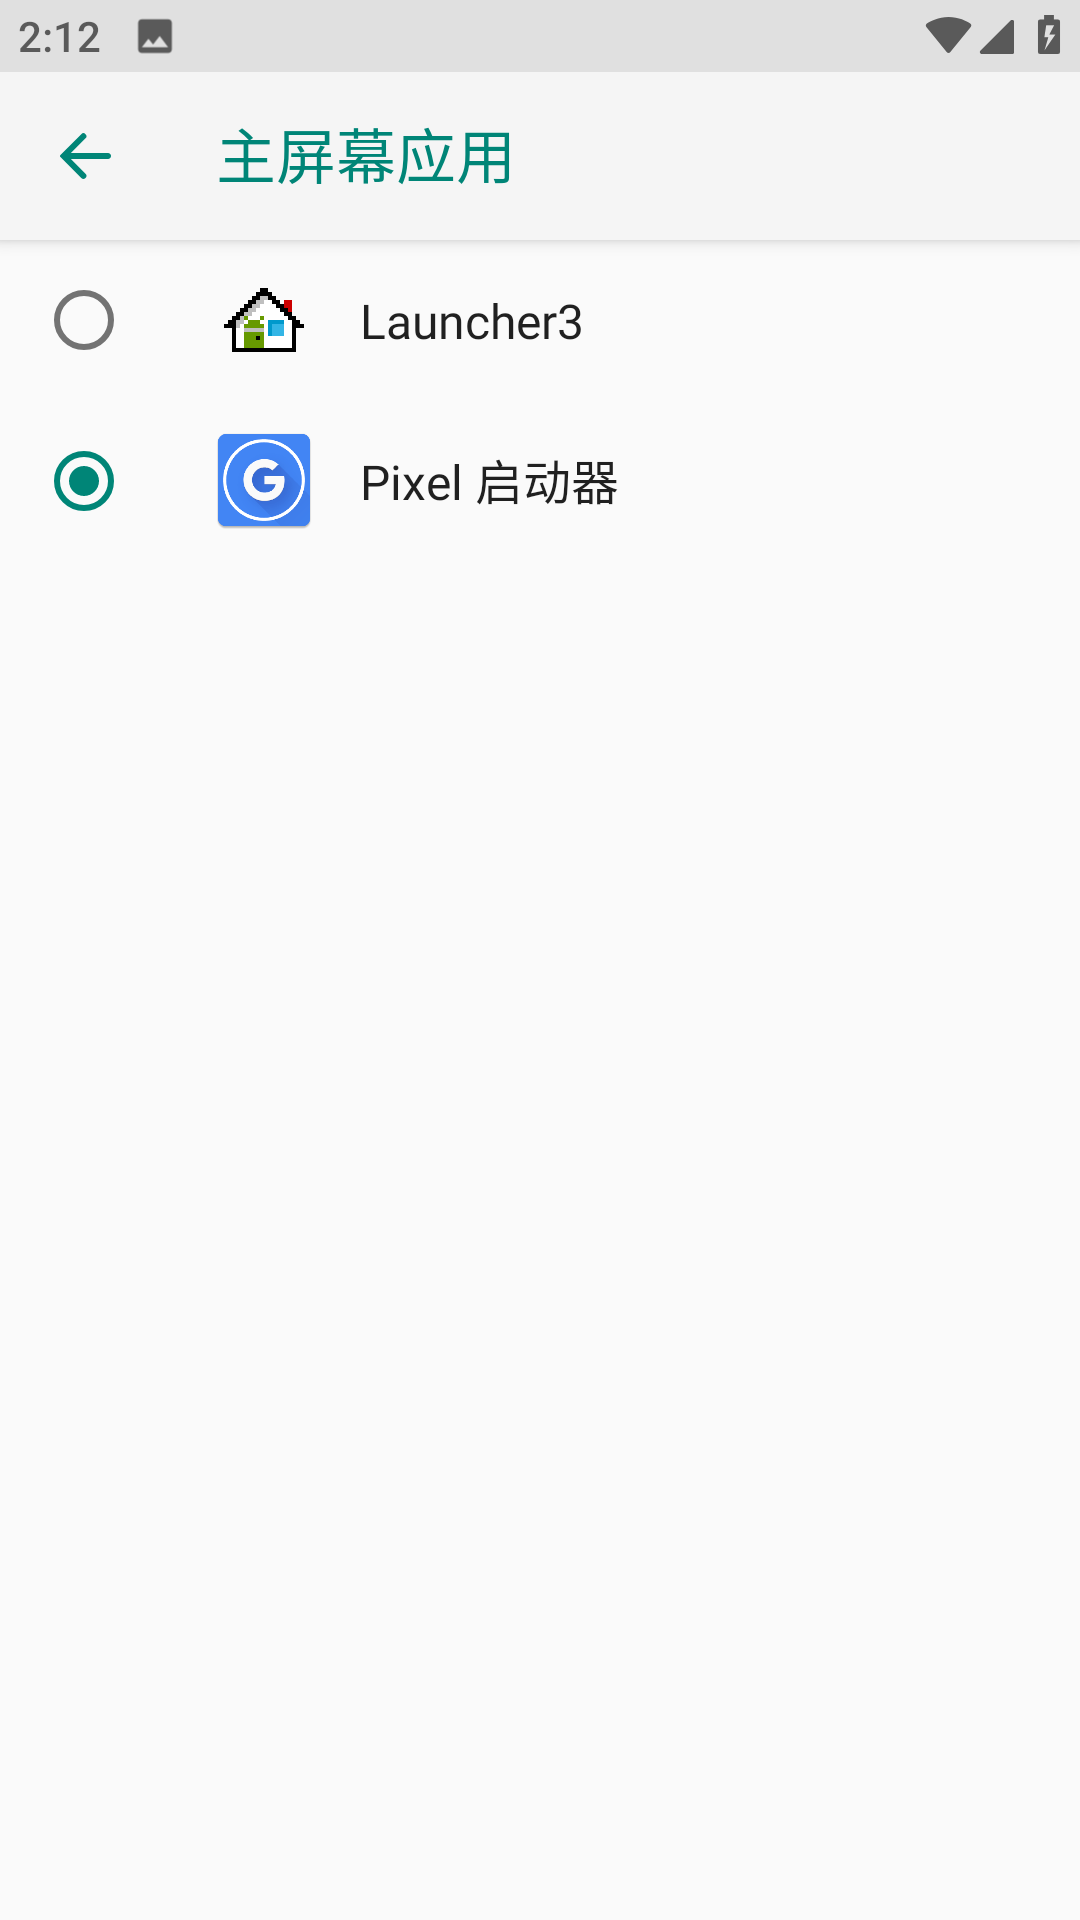 Pixel Launcher